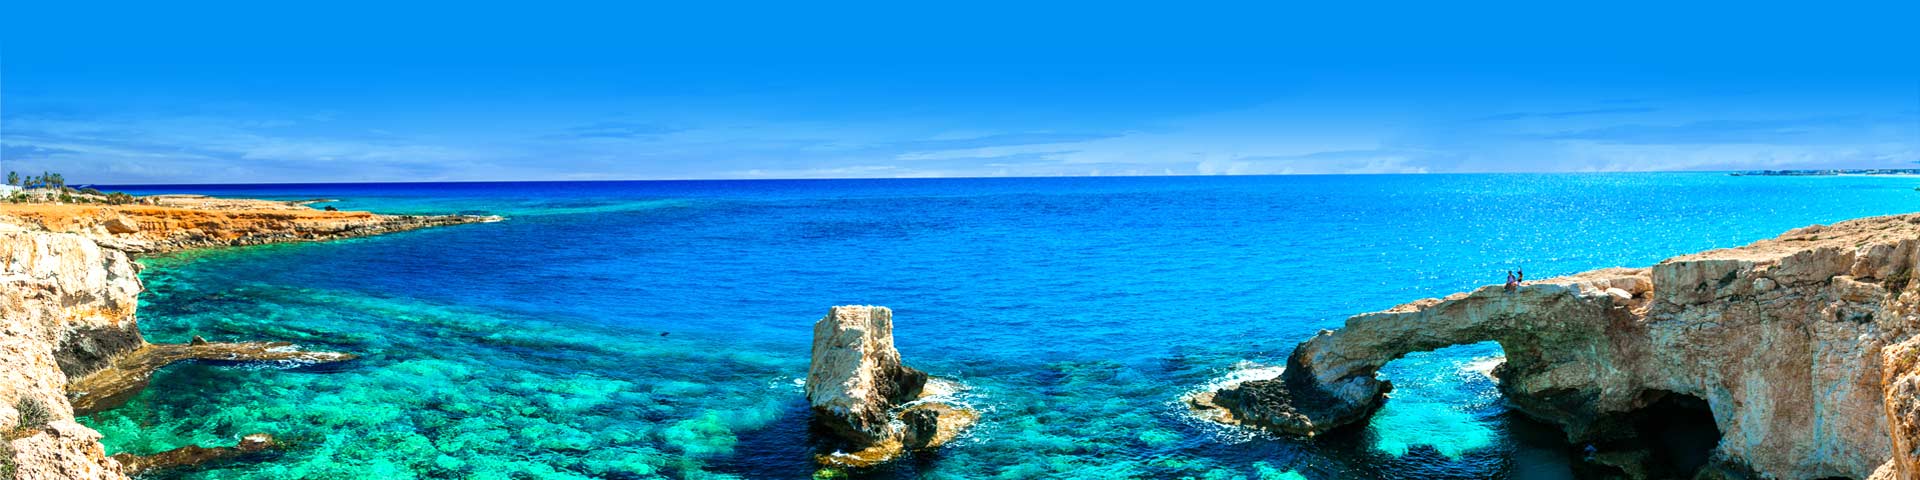 Schitterend kraakhelder zeewater met rotsen aan de kust van Cyprus